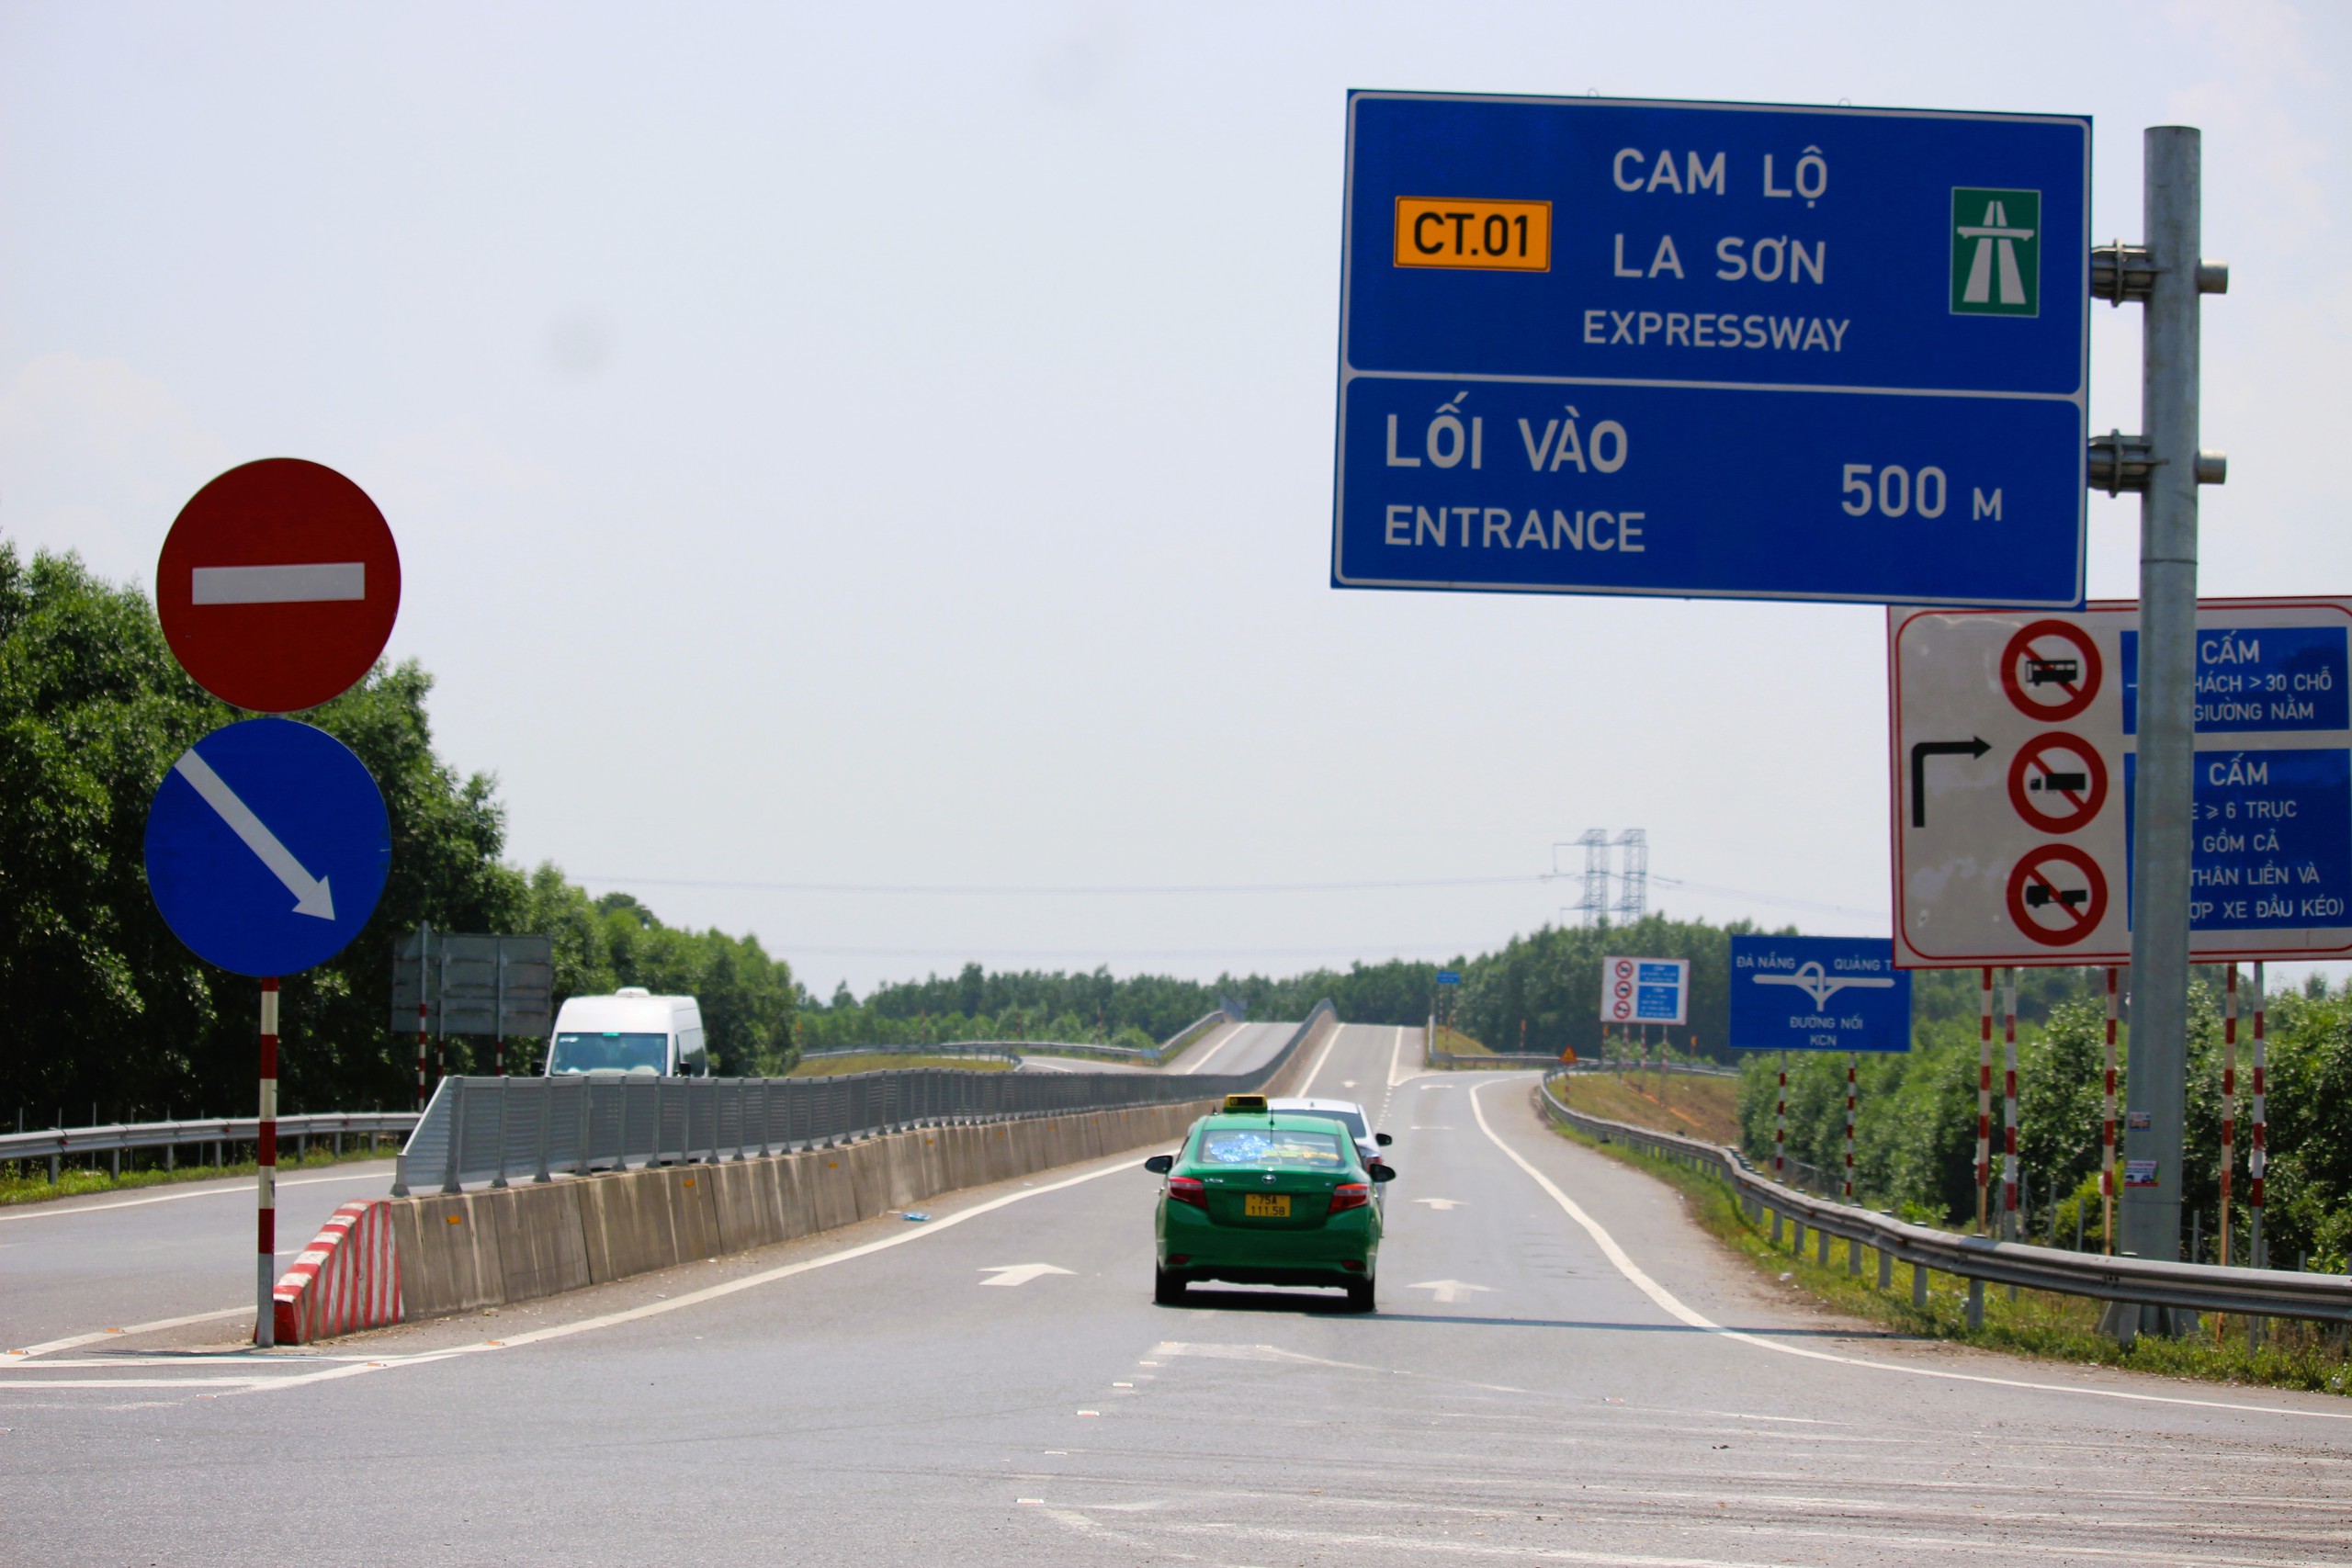 Cắm loạt biển báo phương tiện không vào cao tốc Cam Lộ - La Sơn- Ảnh 11.